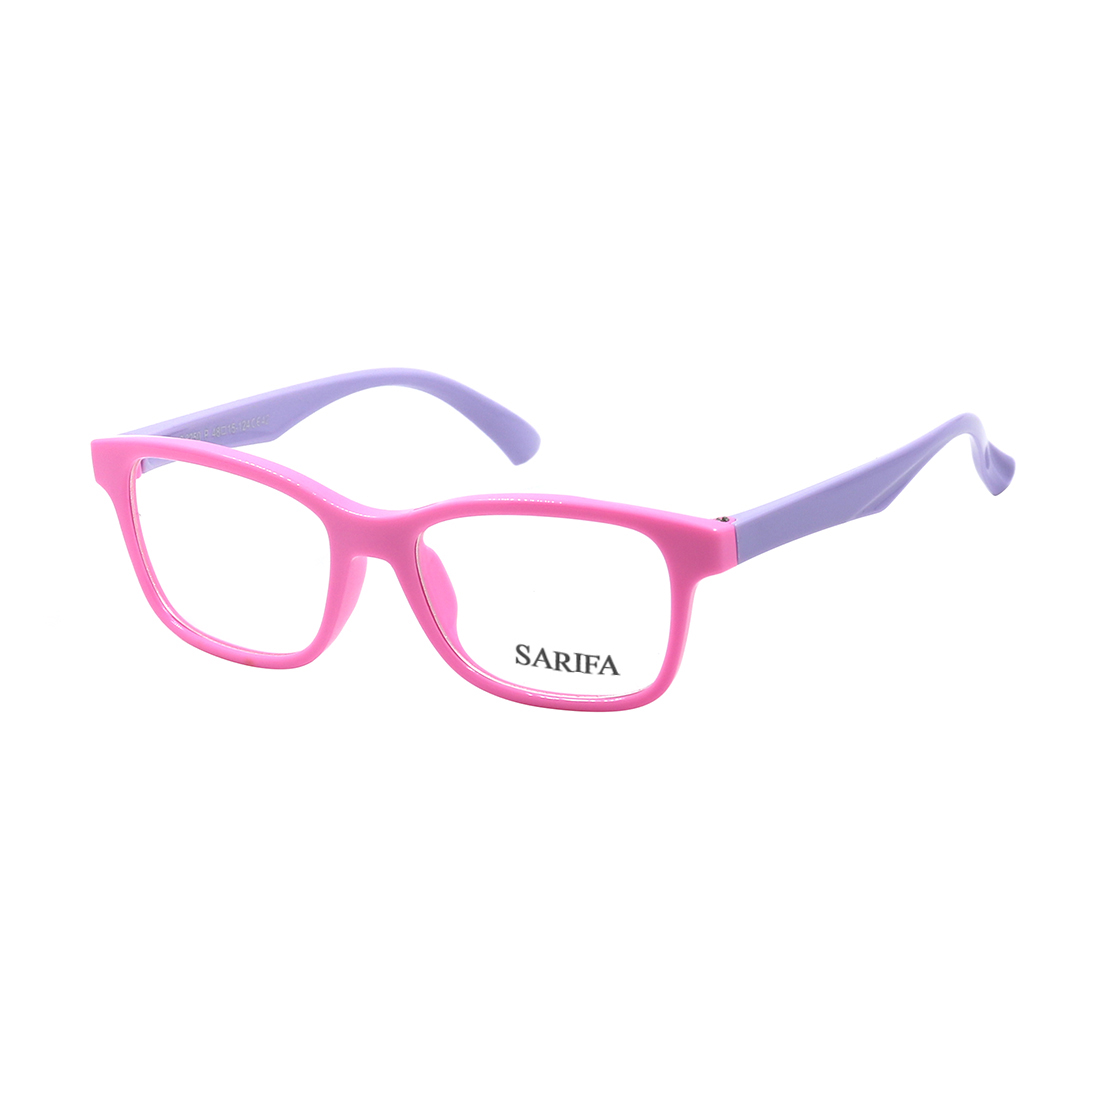 Gọng kính, mắt kính trẻ em SARIFA S8250 (48-15-124), mắt kính thời trang